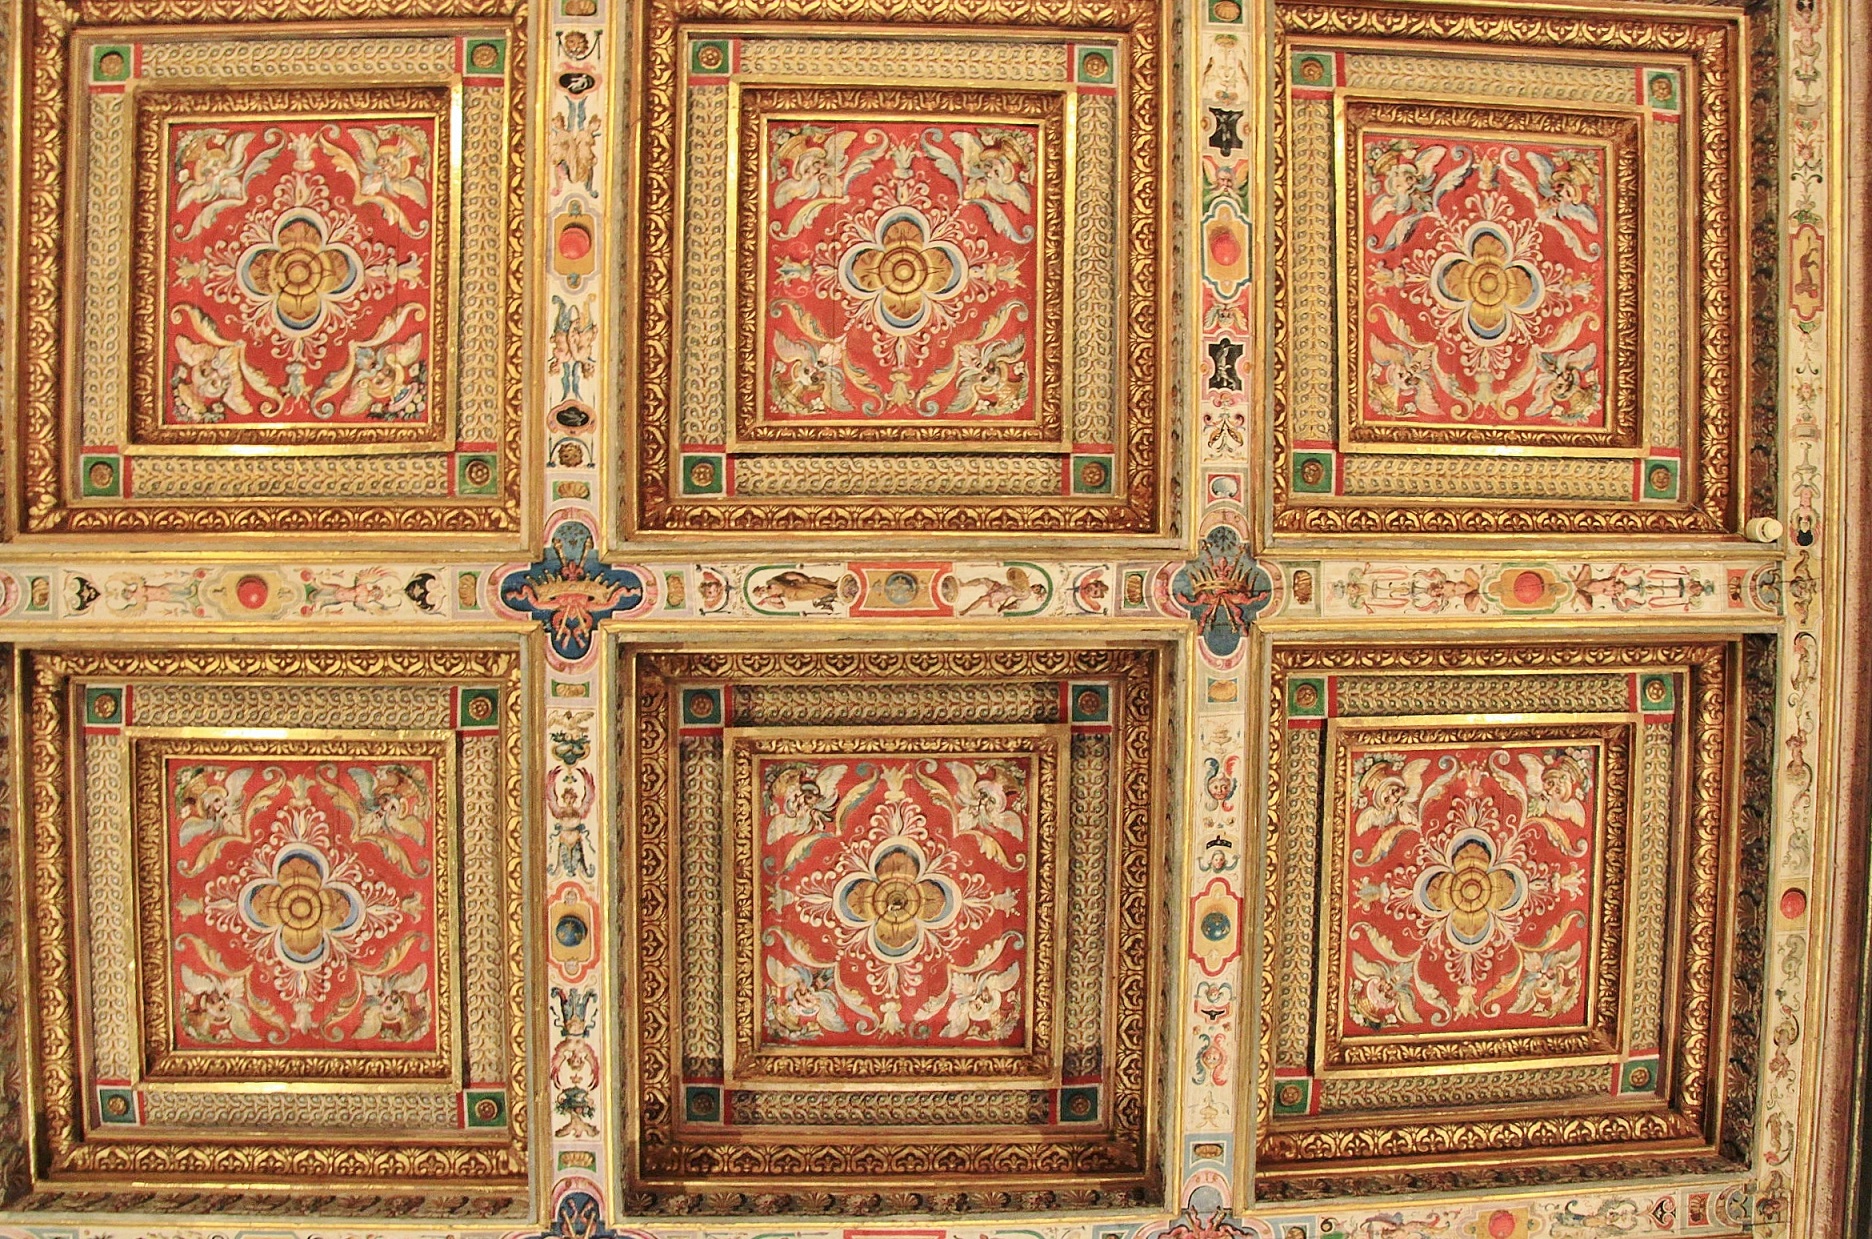 Foto: Interior del palacio Pitti - Florencia (Tuscany), Italia